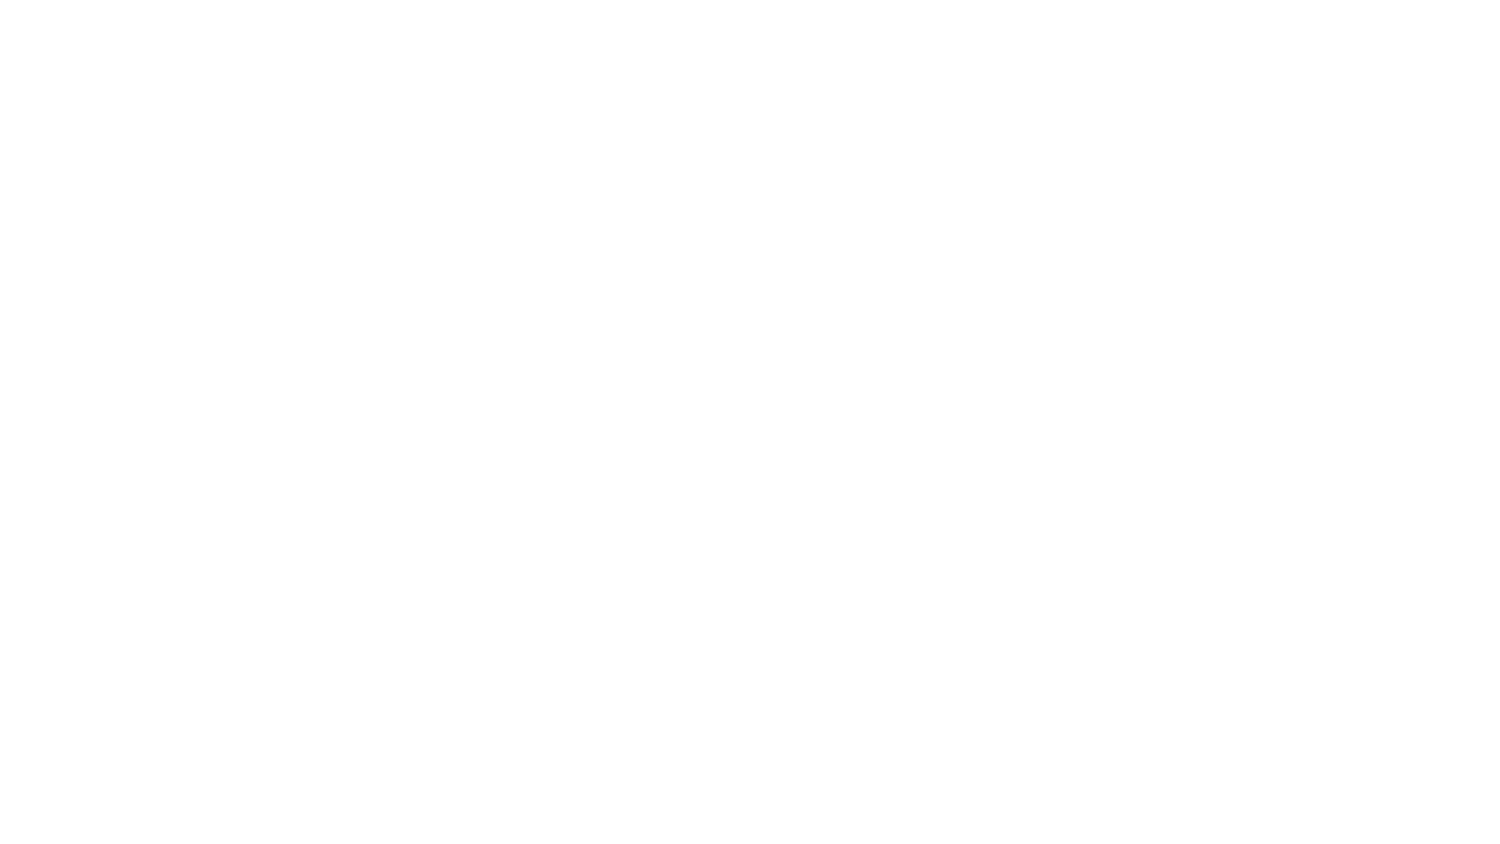 SAMUEL BOURET PRODUCTIONS